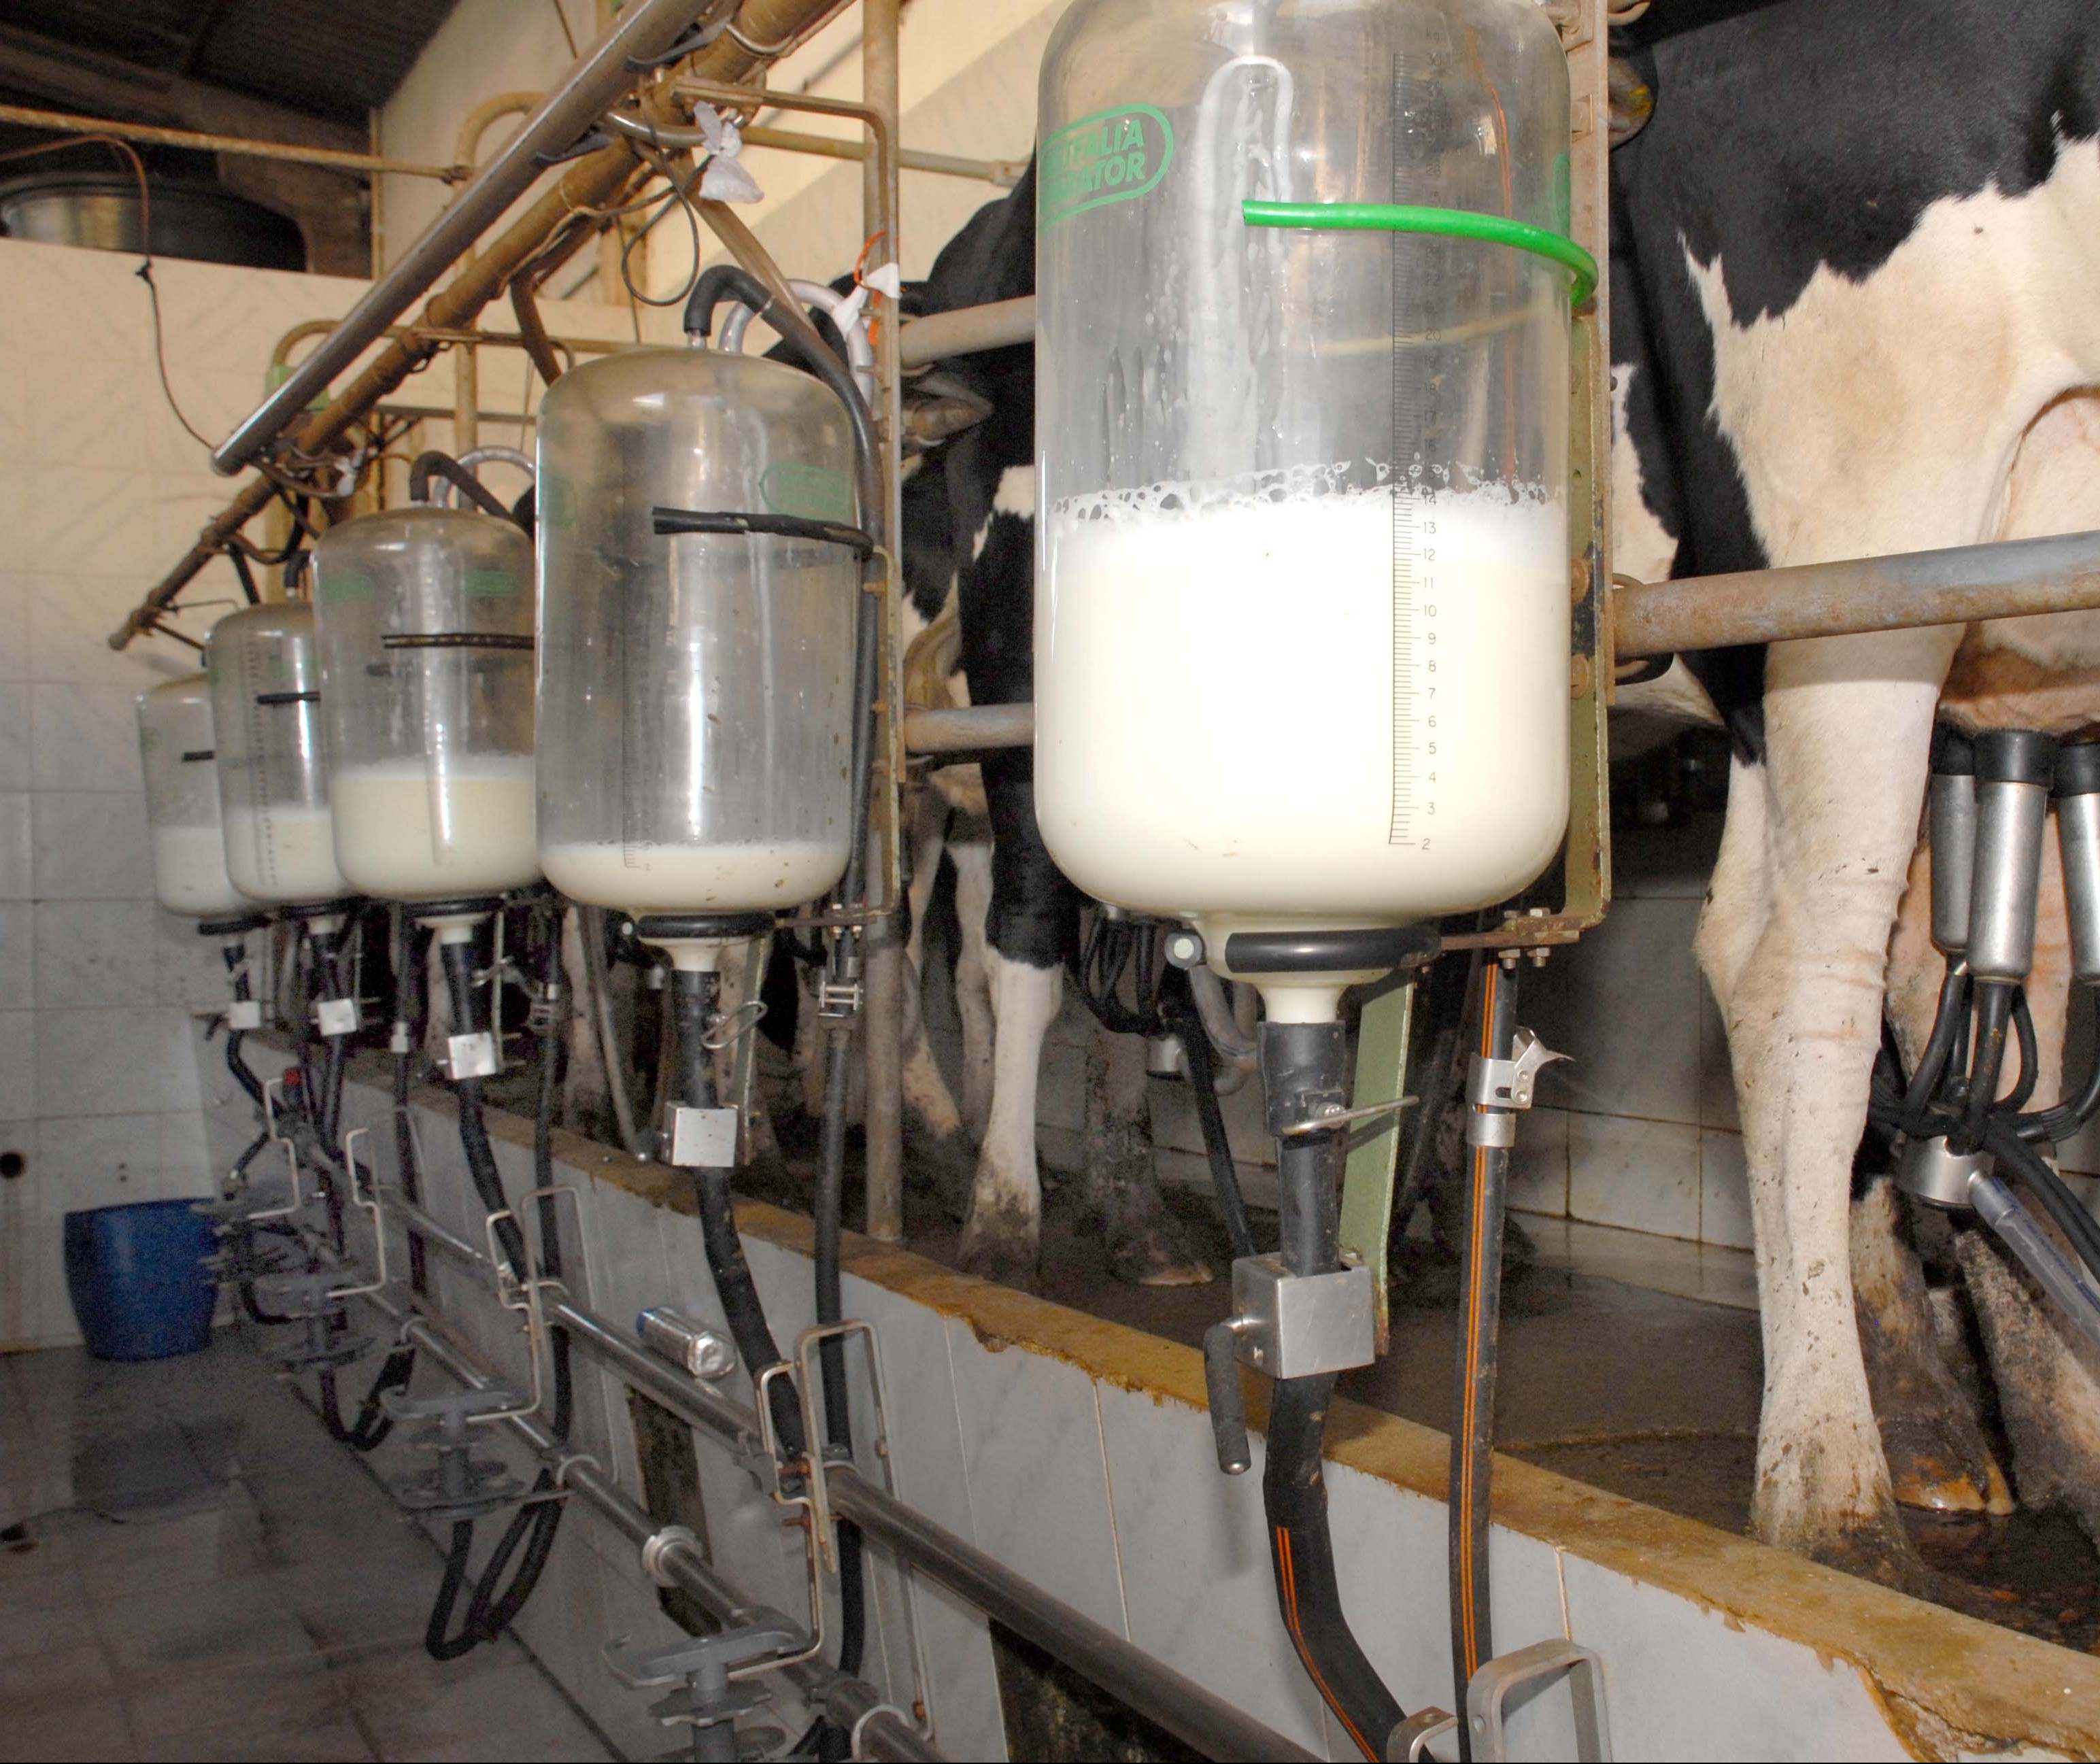 Novas normas do setor lácteo preocupam produtores